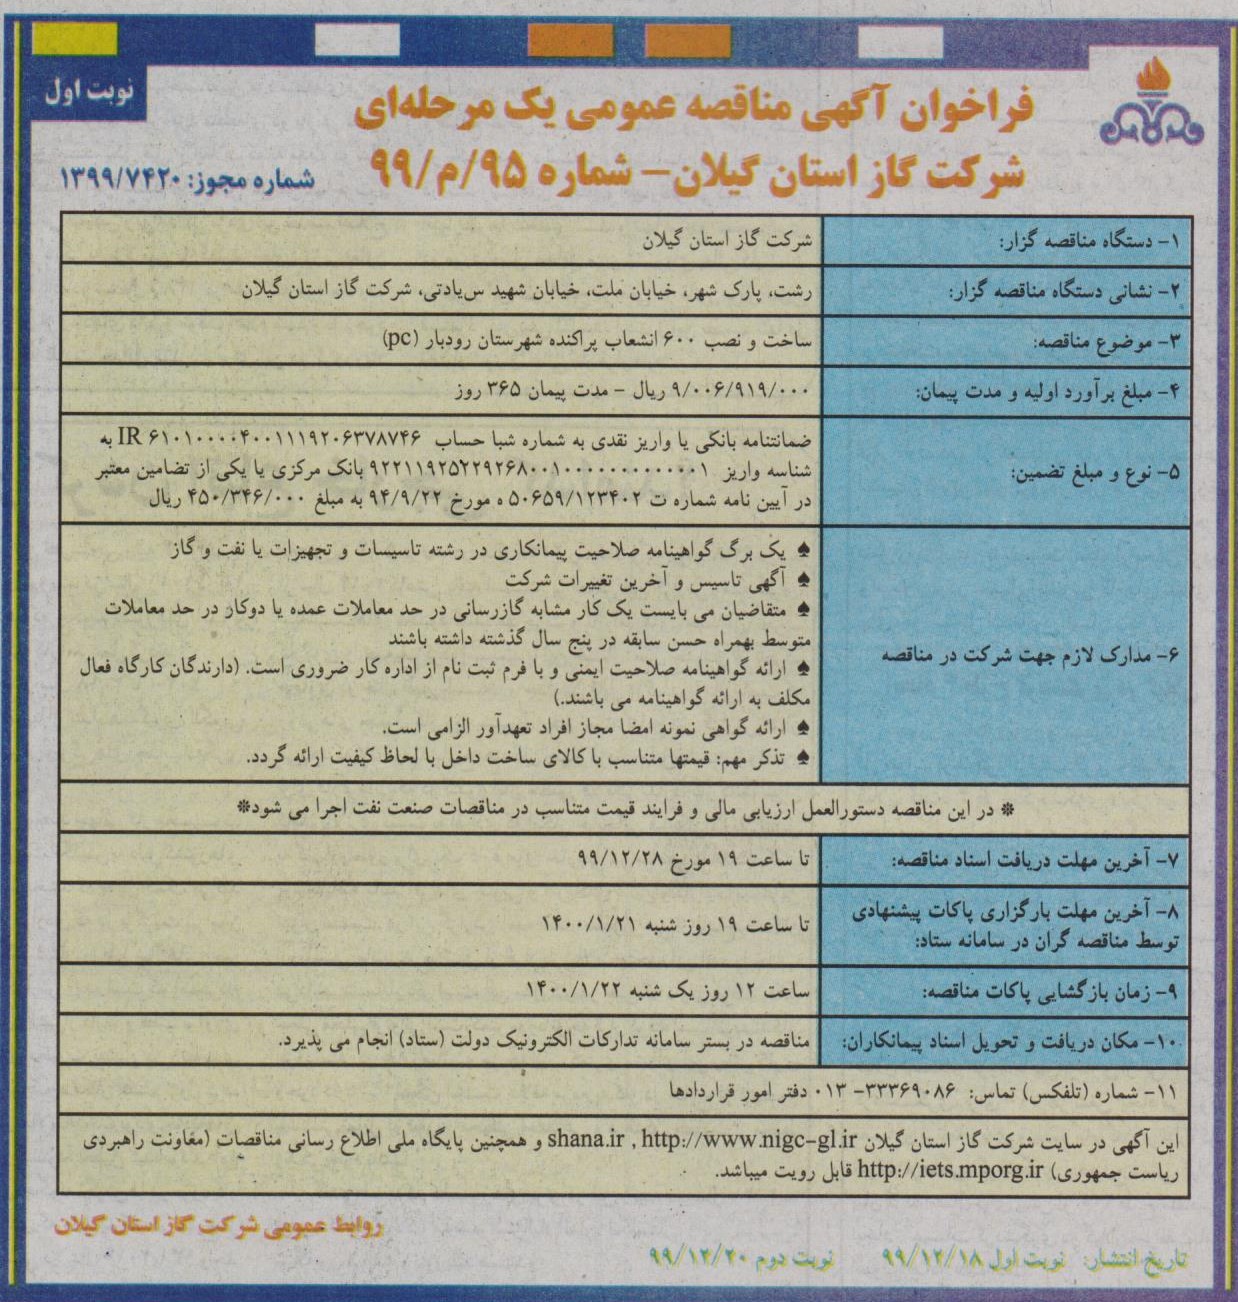 ساخت و نصب 600 انشعاب پراکنده شهرستان رودبار - 18 اسفند 99